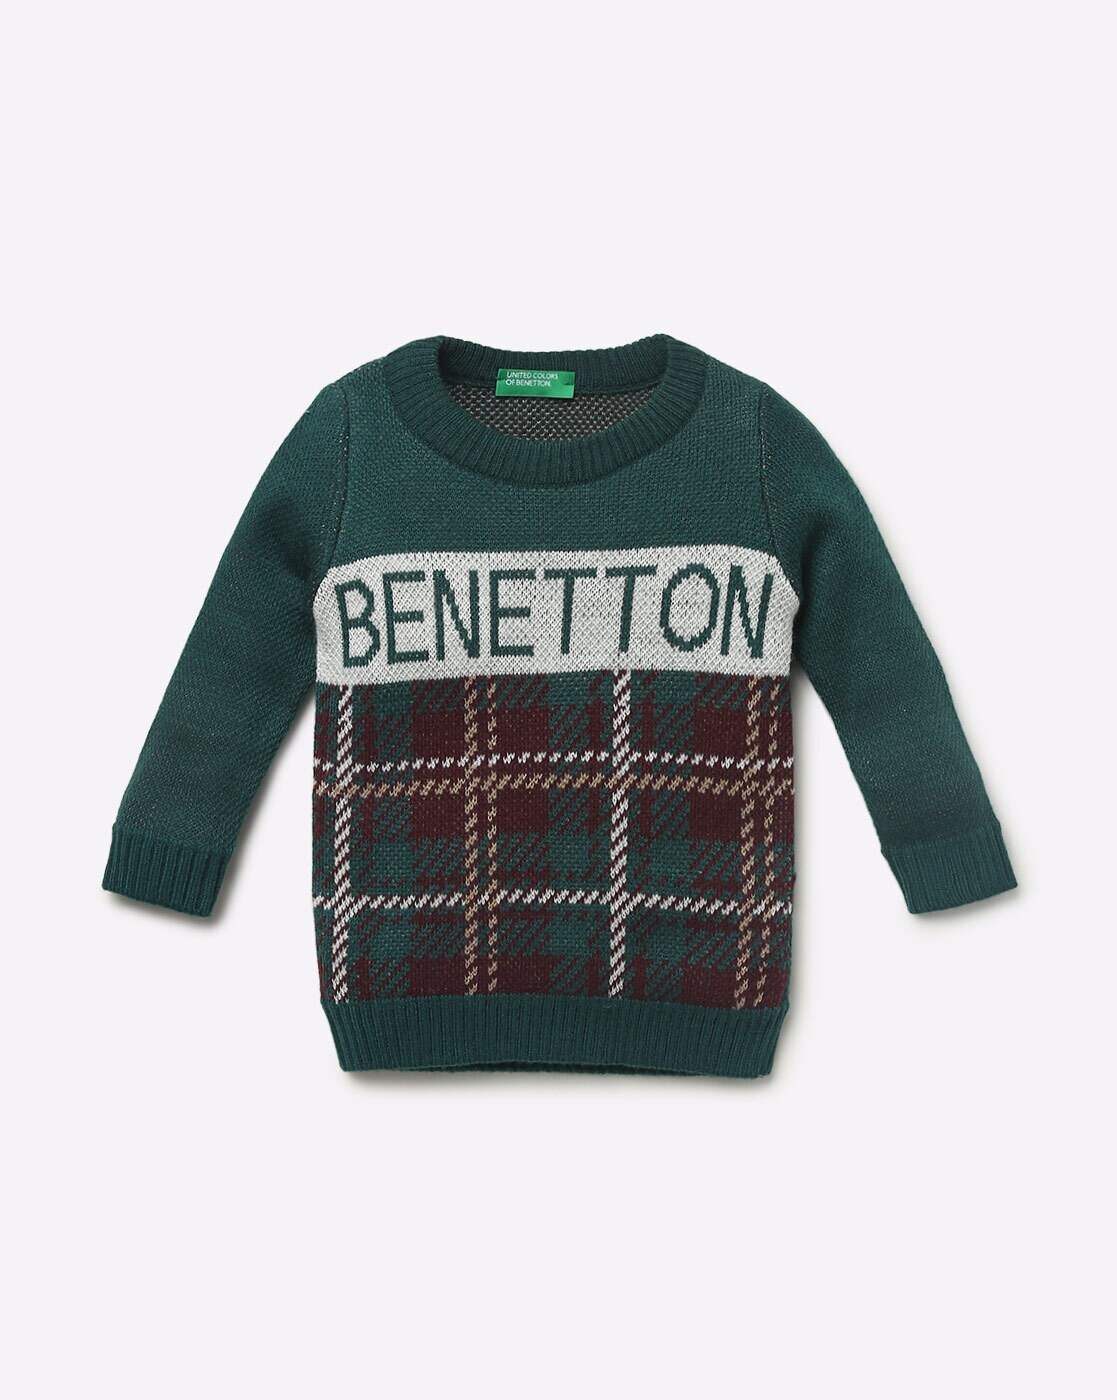 United Colors of Benetton Boys Maglia G/C M/L Sweater 